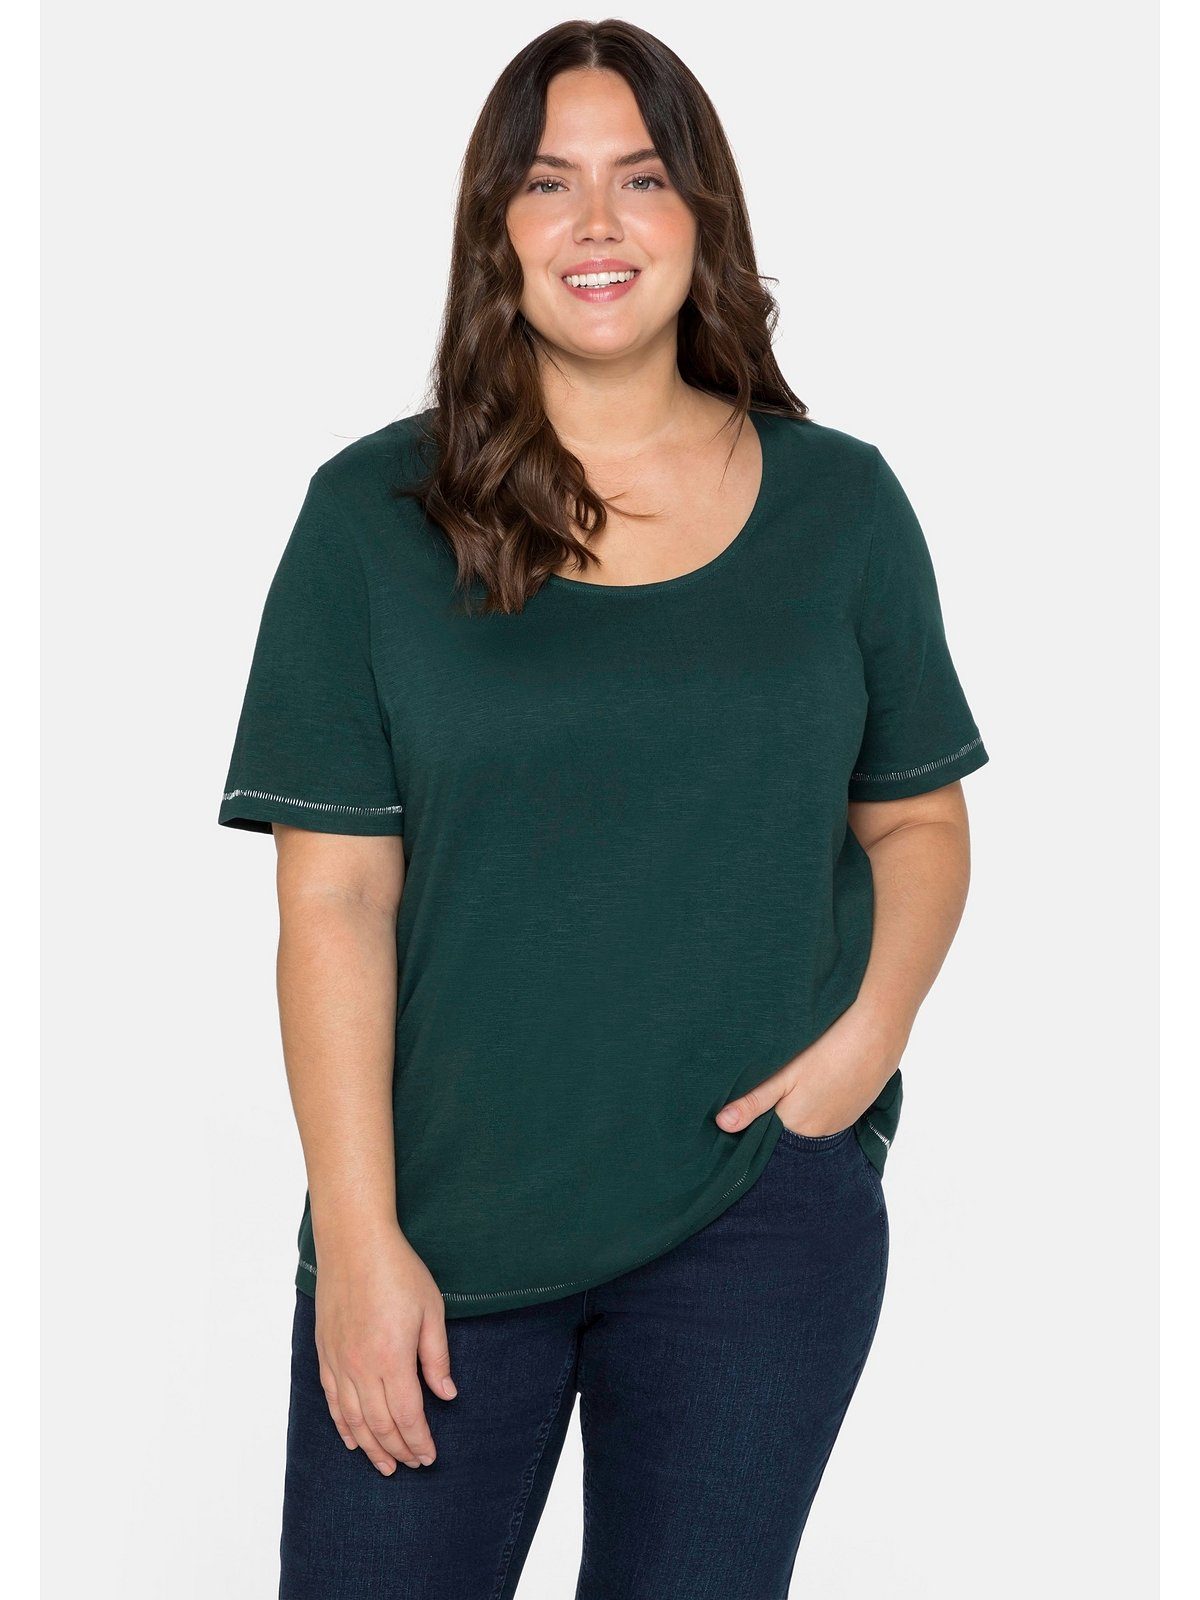 hinten Schulter Größen Print der Sheego Große T-Shirt mit tiefgrün auf